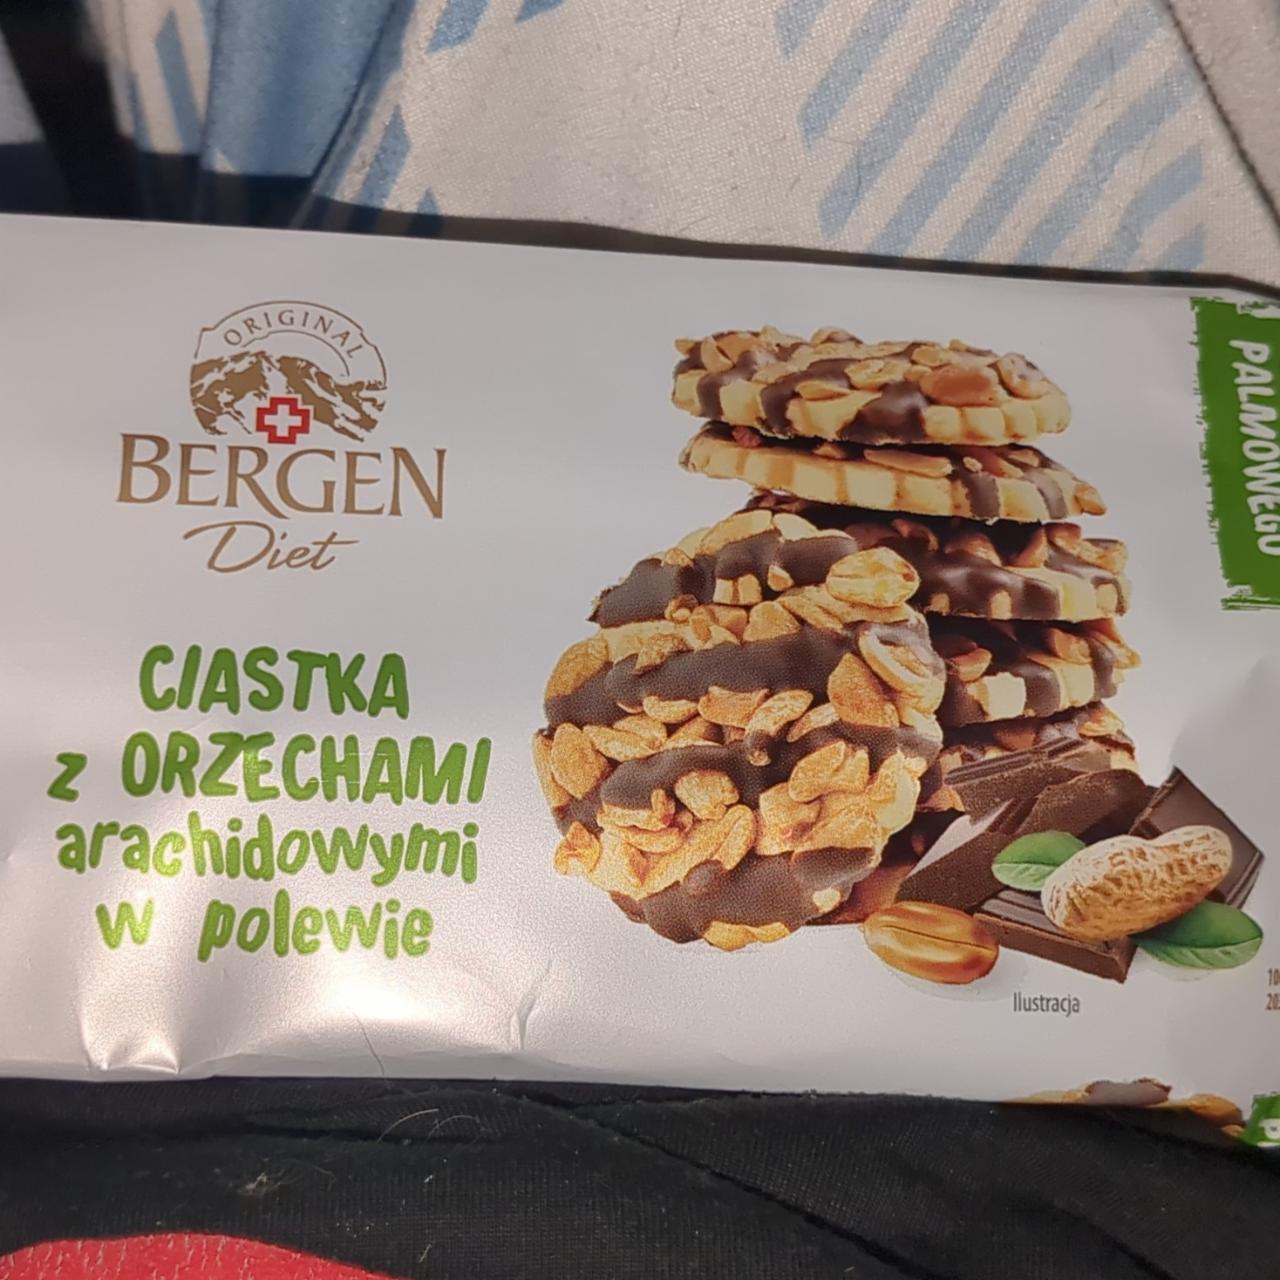 Фото - Ореховое печенье без сахара Ciastka z orzechami arachidowymi w polewie Bergen Diet